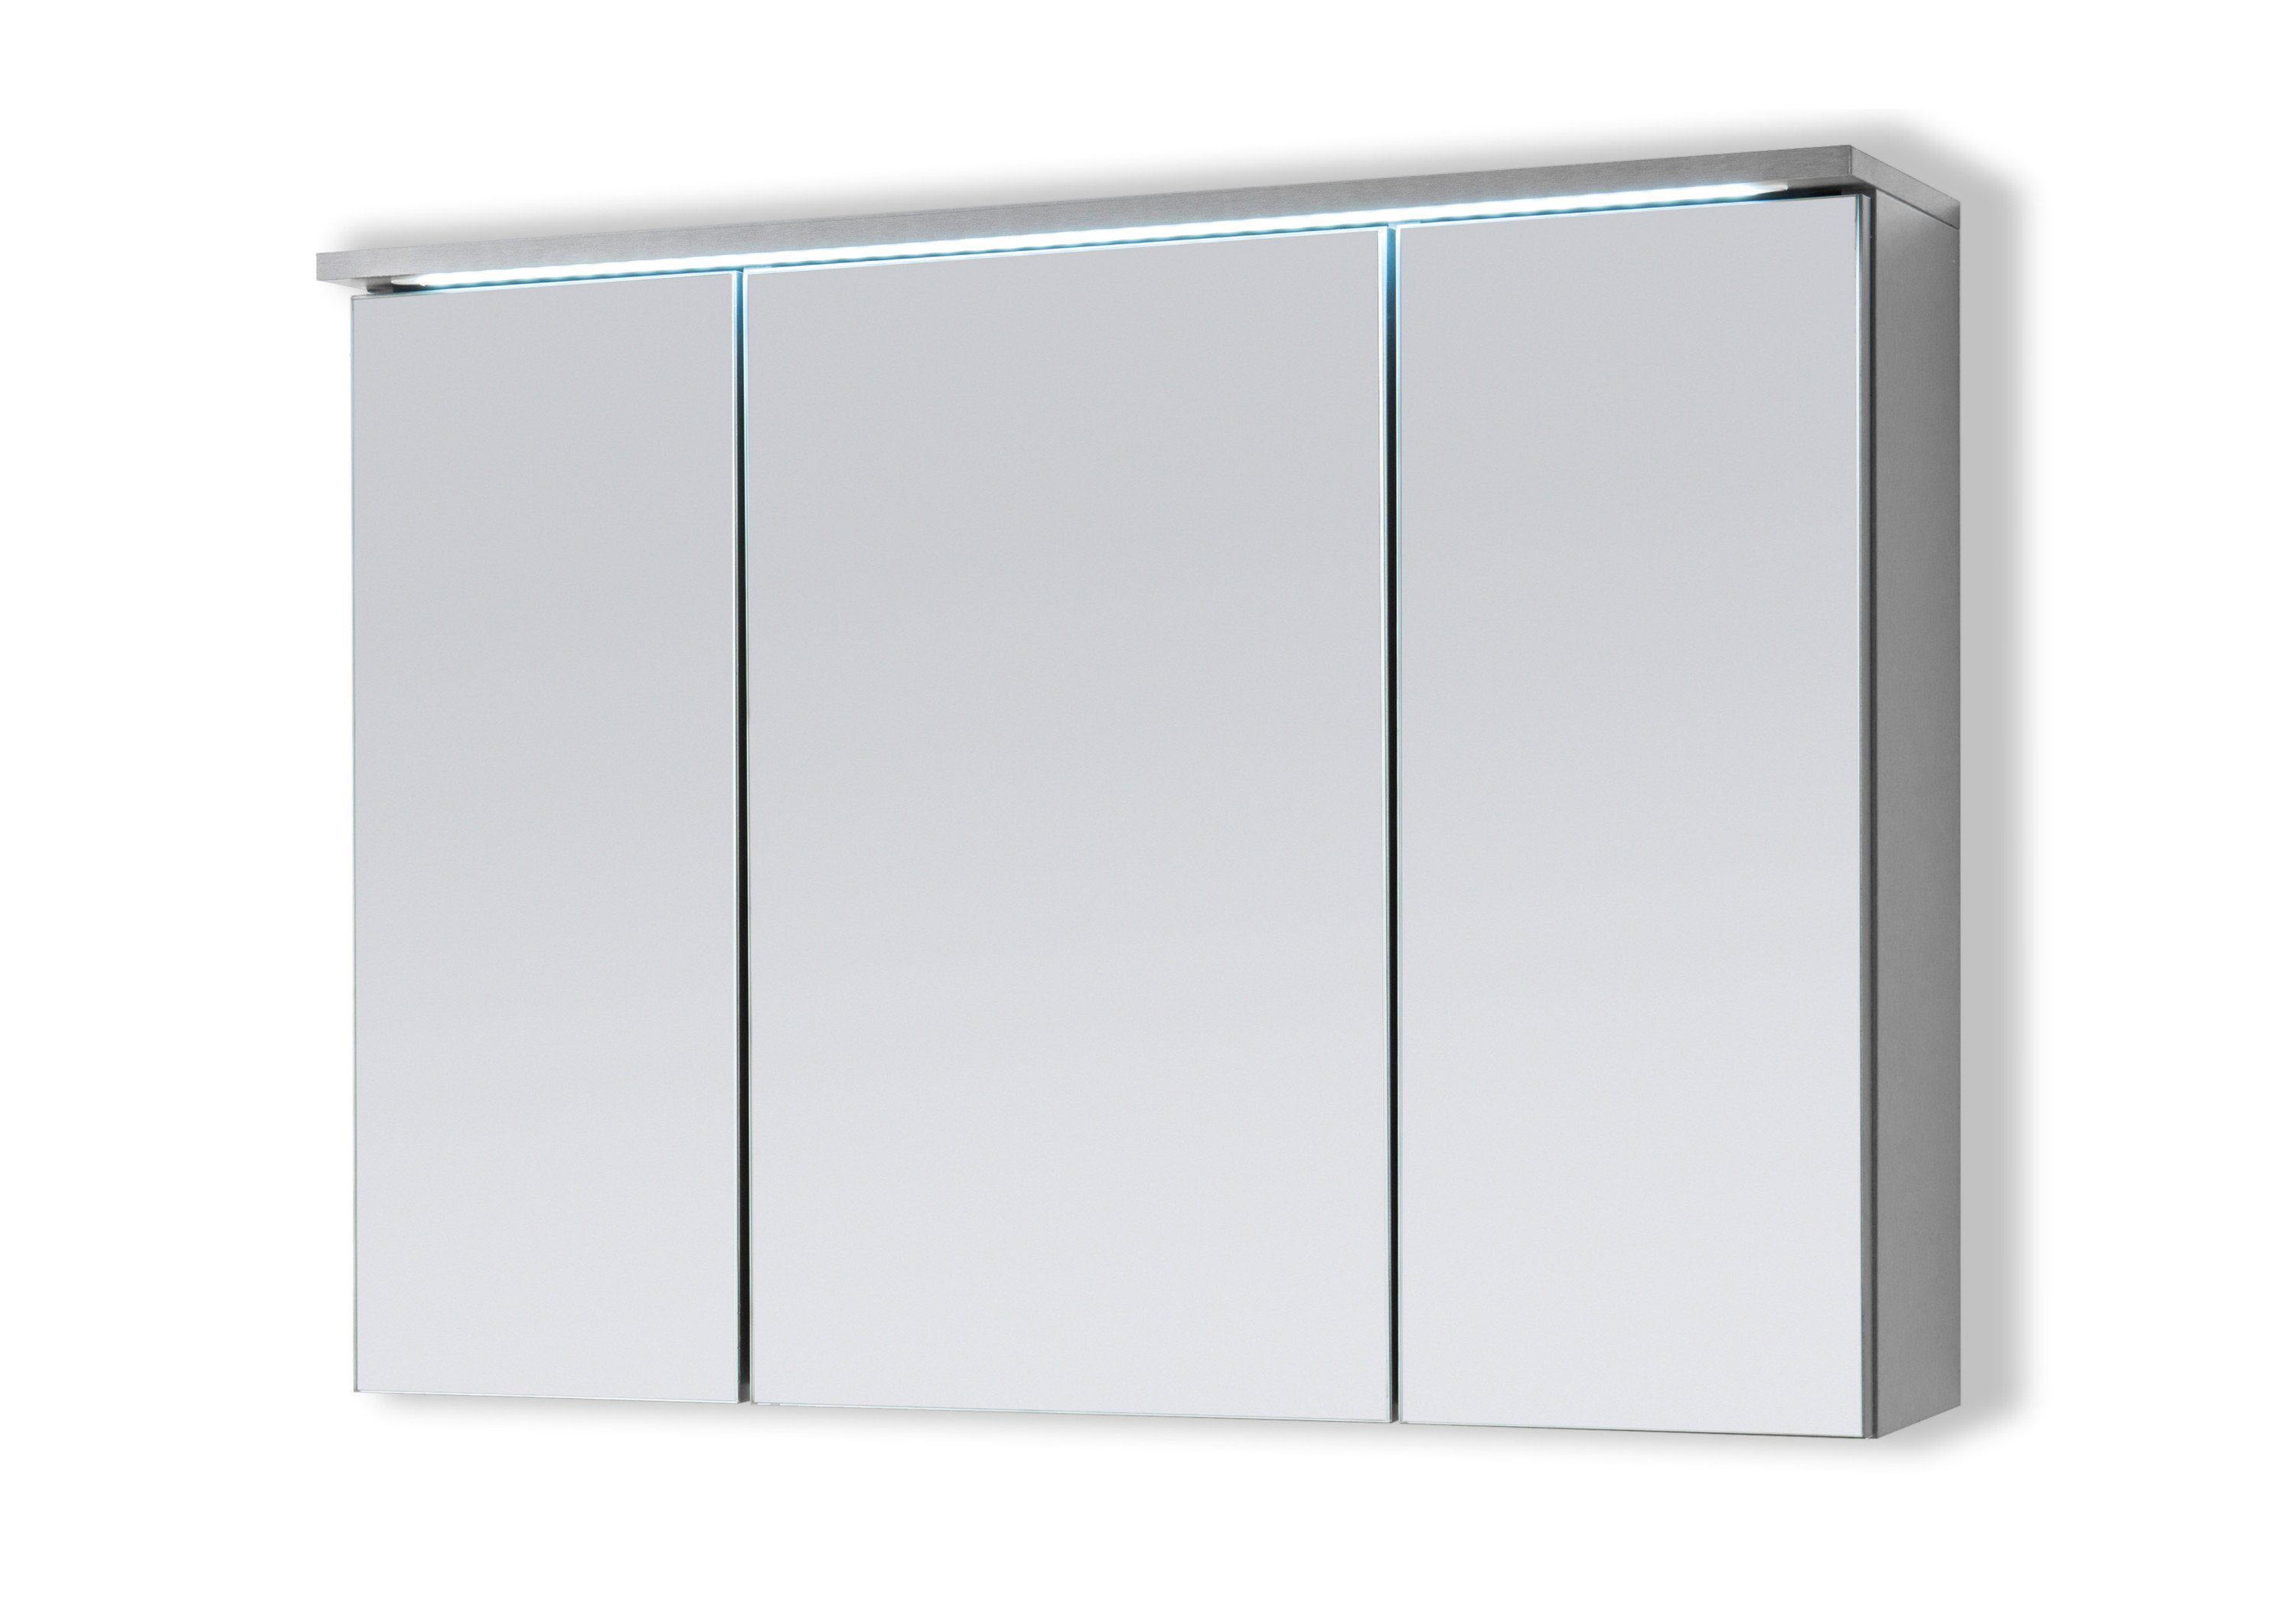 Aileenstore Spiegelschrank DUO Breite 100 cm, Schalter-/Steckdosenbox, LED- Beleuchtung, LIEFERUNG: Sicher und doppelt verpackte Lieferung mit  Nachverfolgungsnummer